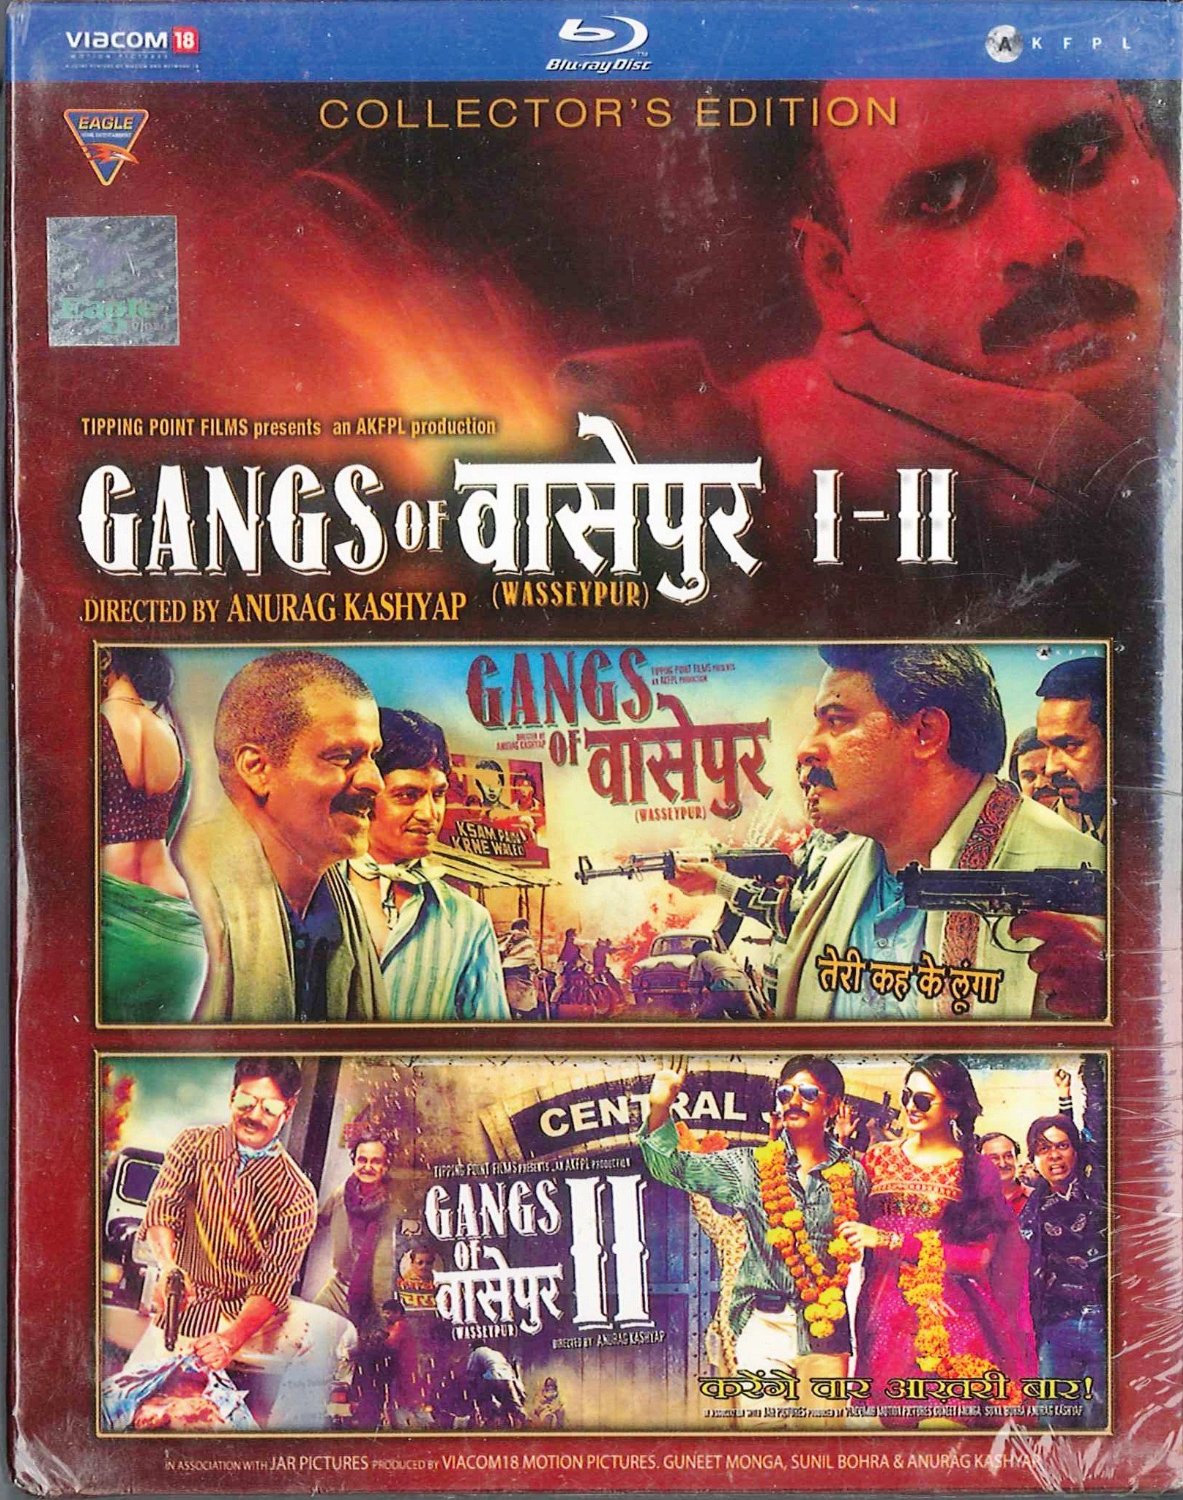 gangs of wasseypur 2 full movie